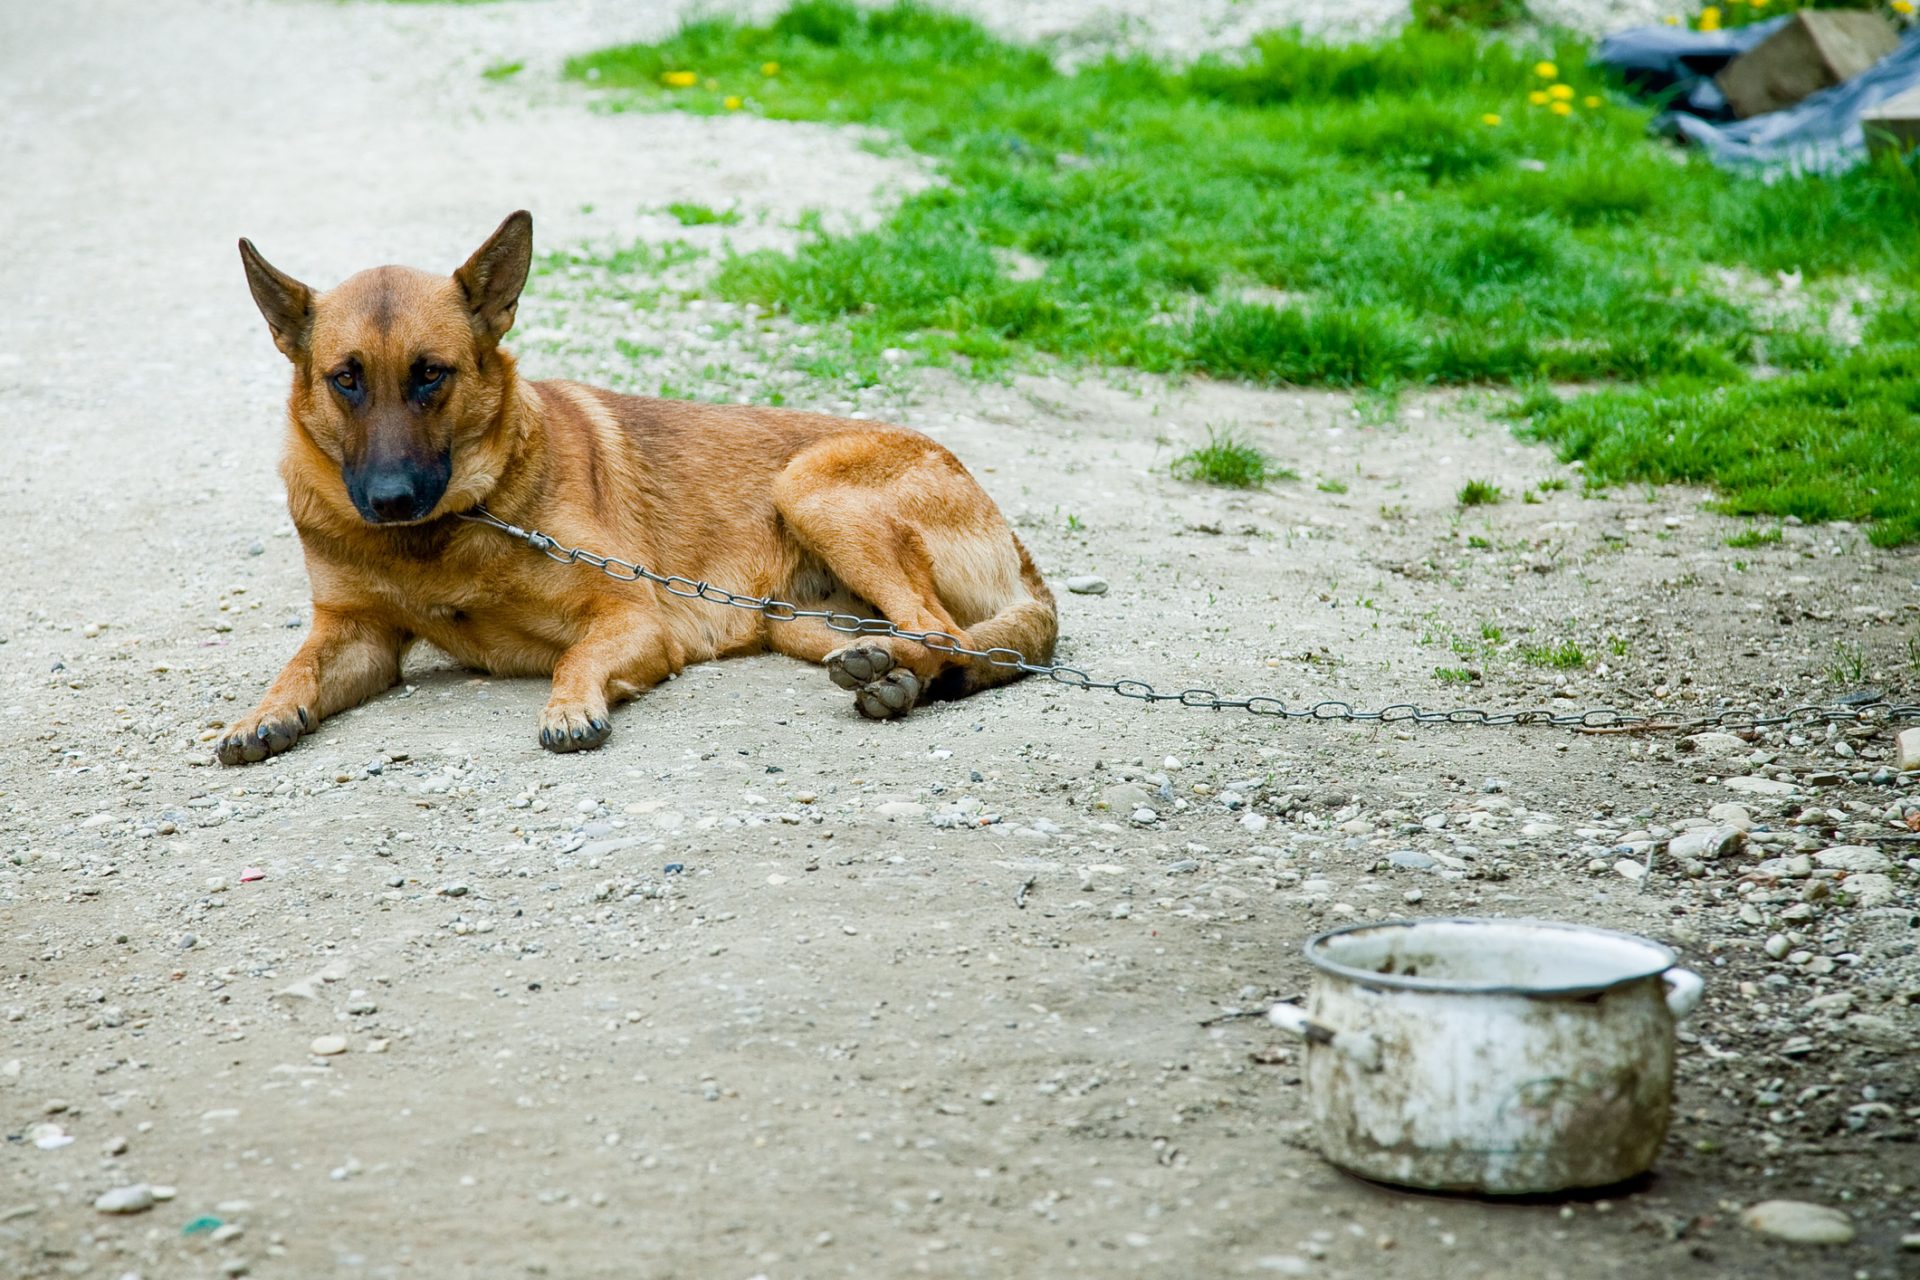 BE questiona Governo sobre cães encontrados mortos em Loures